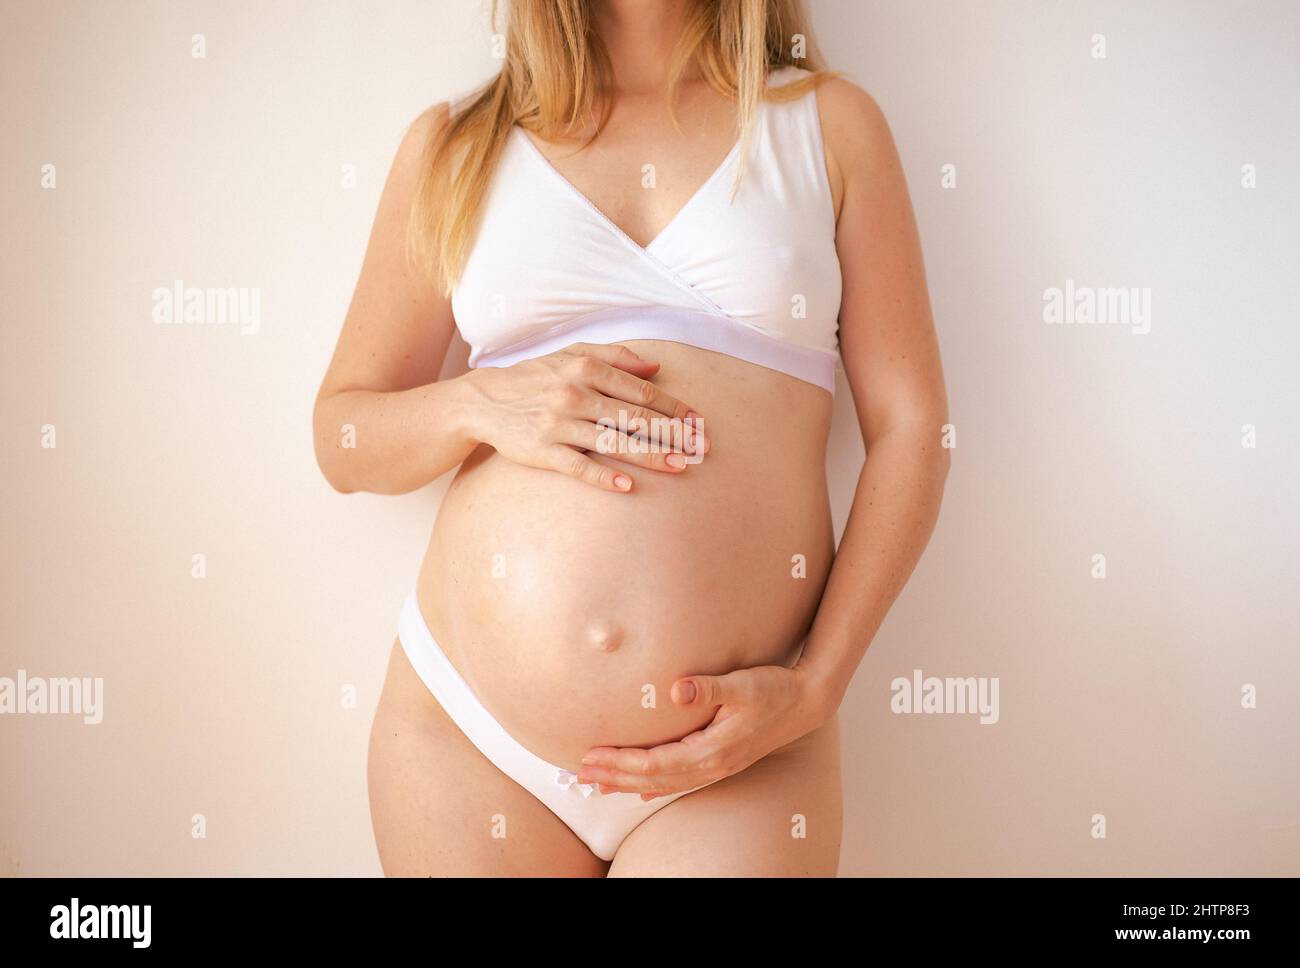 ventre donna incinta, tecnologia riproduttiva, speranza, concetto di vita nuova Foto Stock